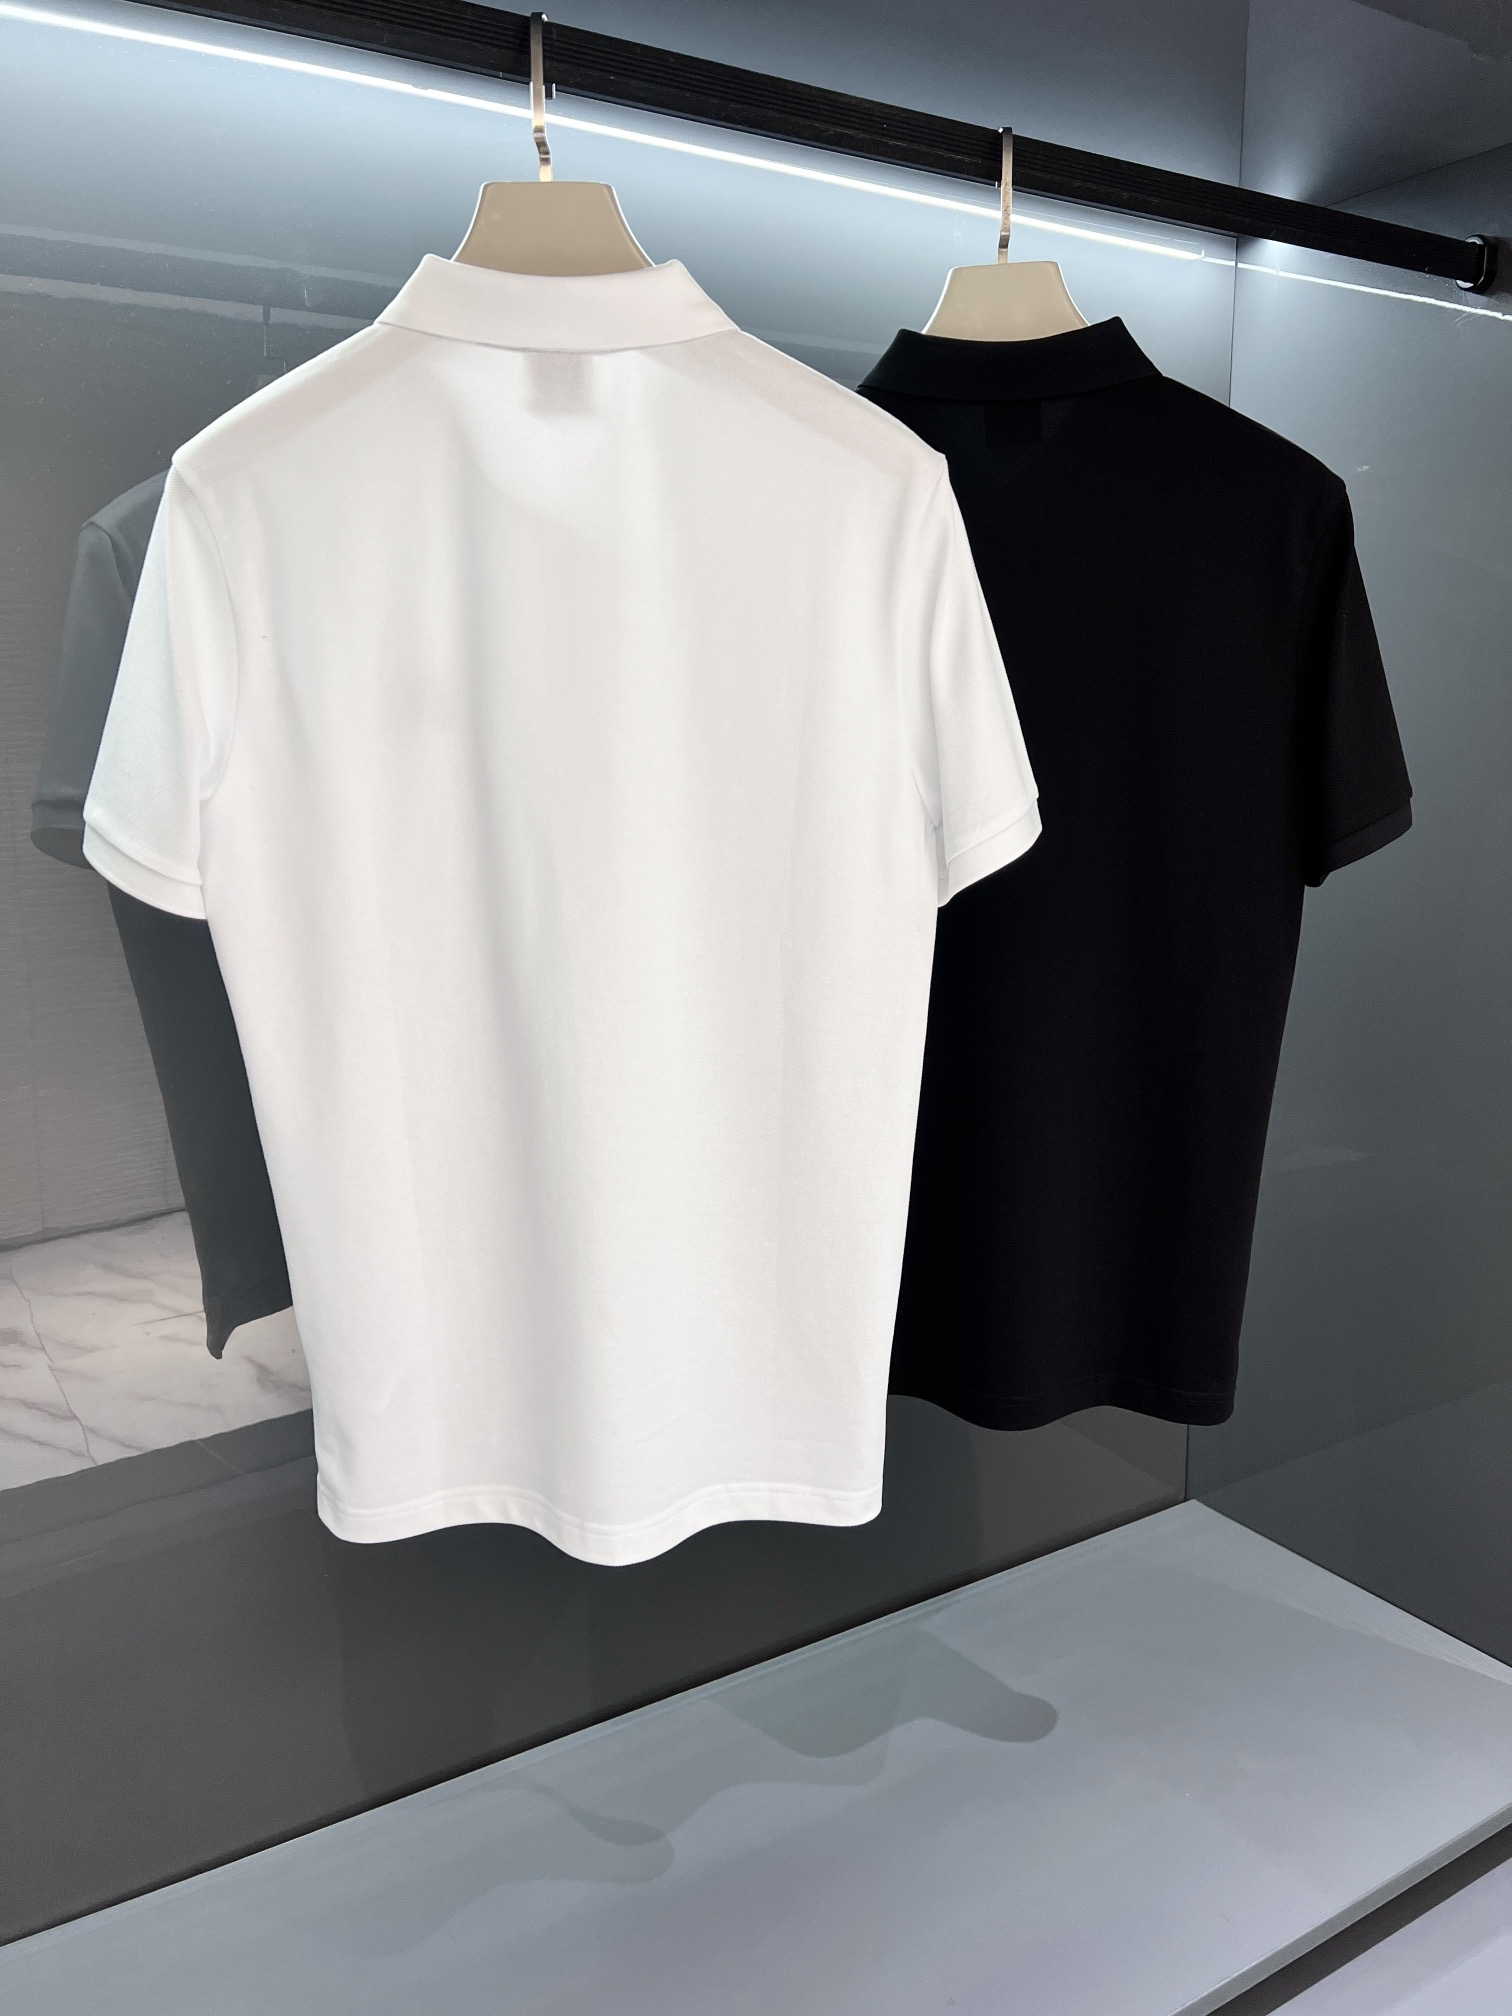 新品柜台同步代购品BUR贸易渠道,细节感和设计感几乎完美呈现.色泽质感兼具的休闲新季潮流马球Polo衫.